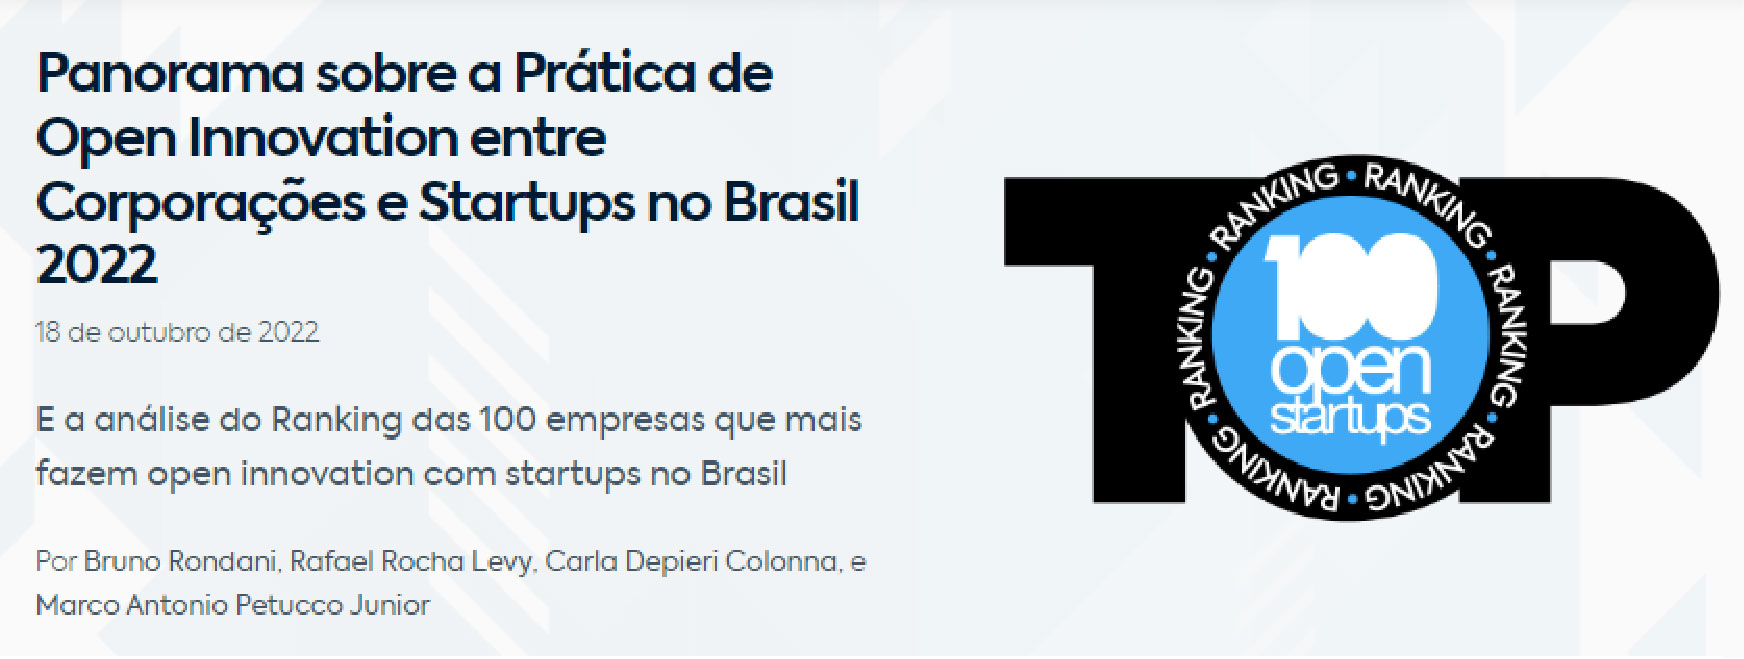 Imagem com a escrita Panorama sobre a Prática de Open Innovation entre Corporações e Startups no Brasil 2022